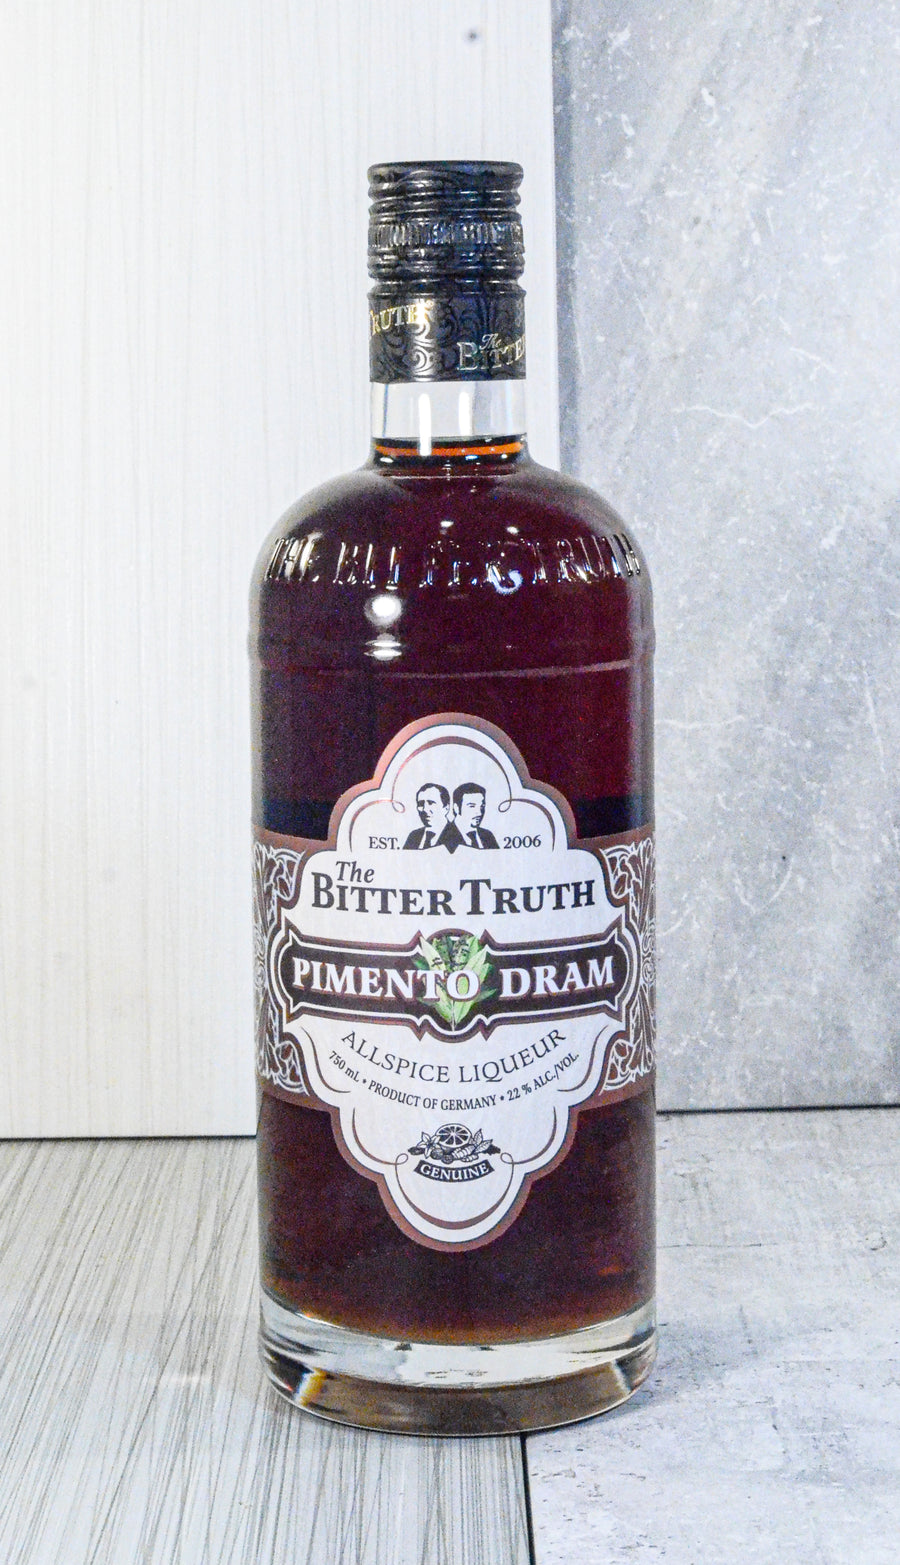 The Bitter Truth, Pimento (Allspice) Dram Liqueur